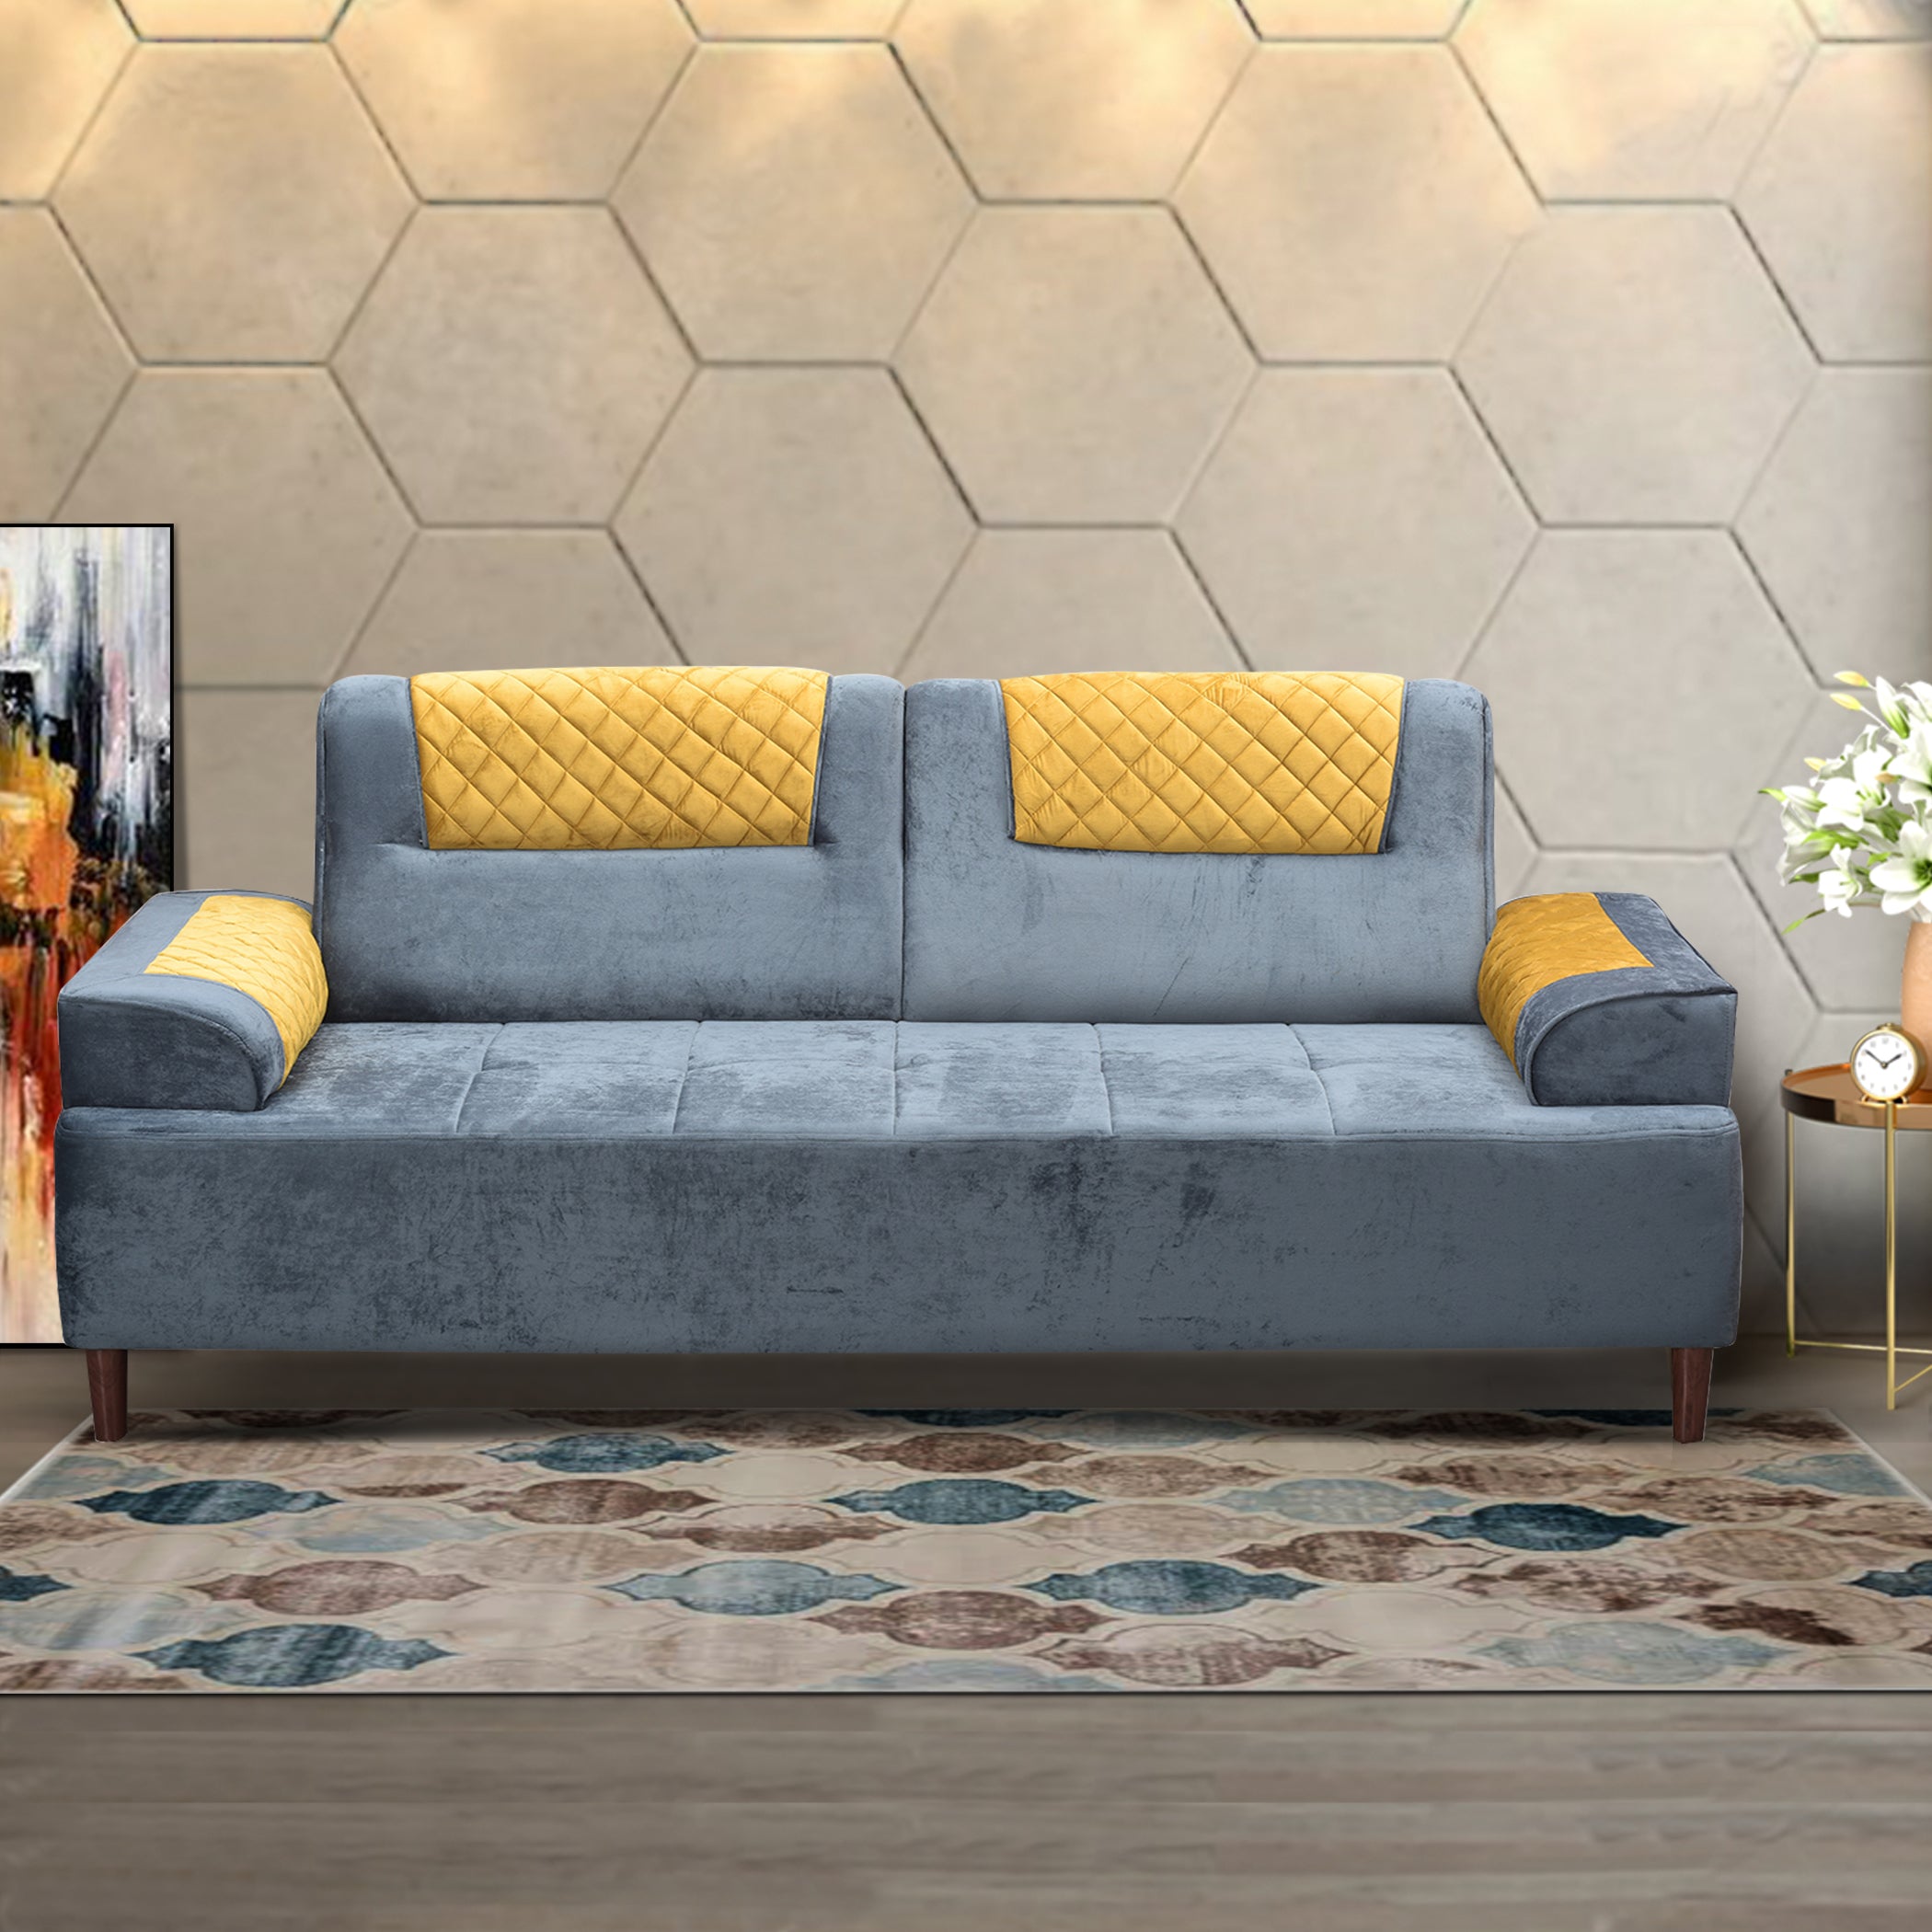 Austin GreyYellow 3S Sofa by Zorin Zorin